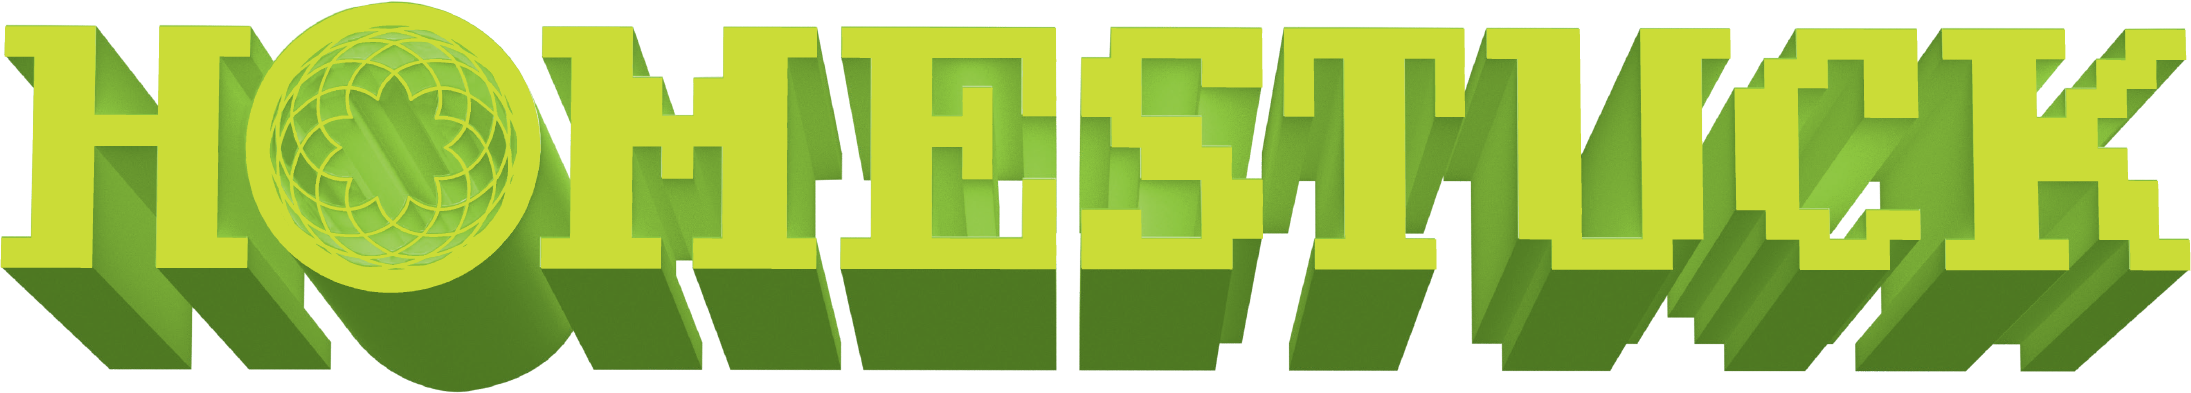 homestuck logo vector